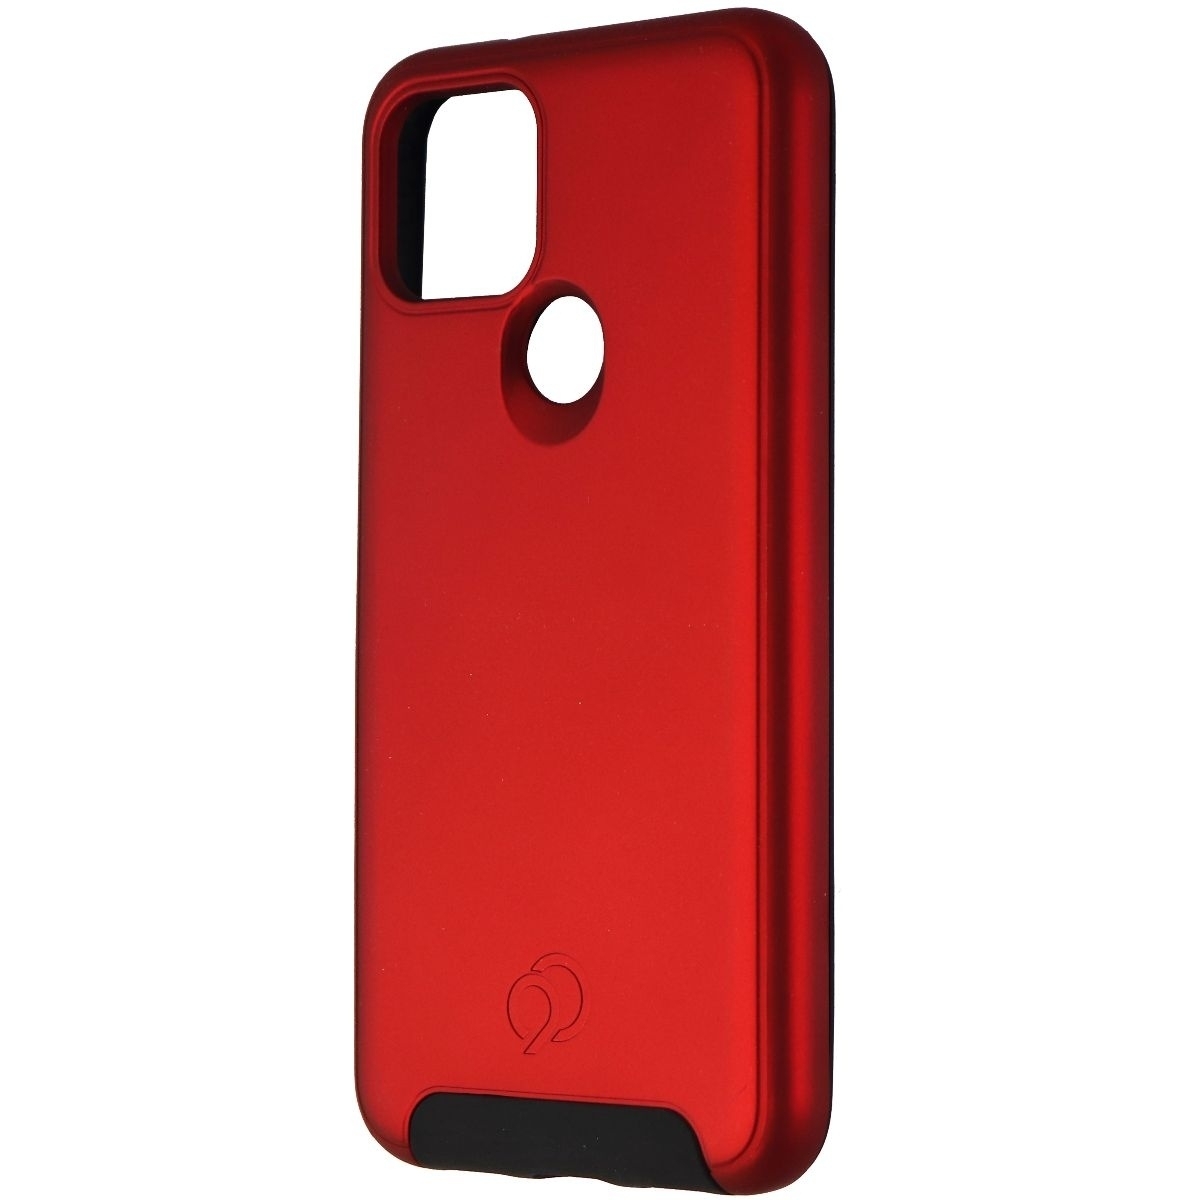 Nimbus9 Cirrus 2 Series Hard Case For Google Pixel 5 Smartphones - Red/Black